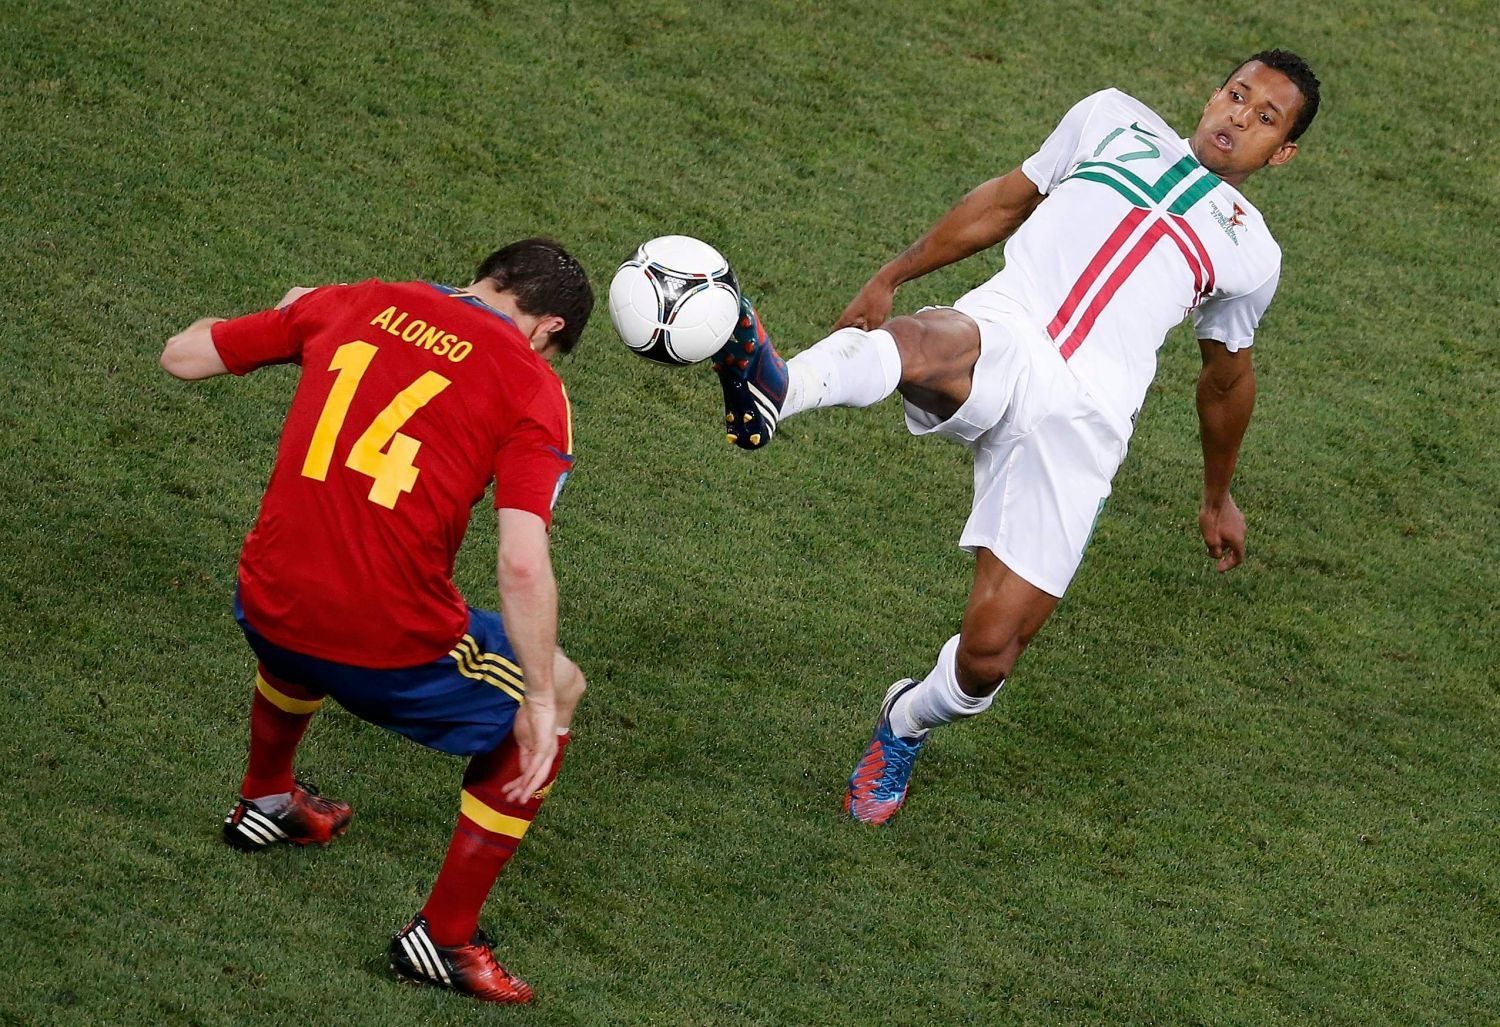 Xabi Alonso jde hlavičkou proti kopačce Naniho během semifinálového utkání mezi Portugalskem a Španělskem na Euru 2012.